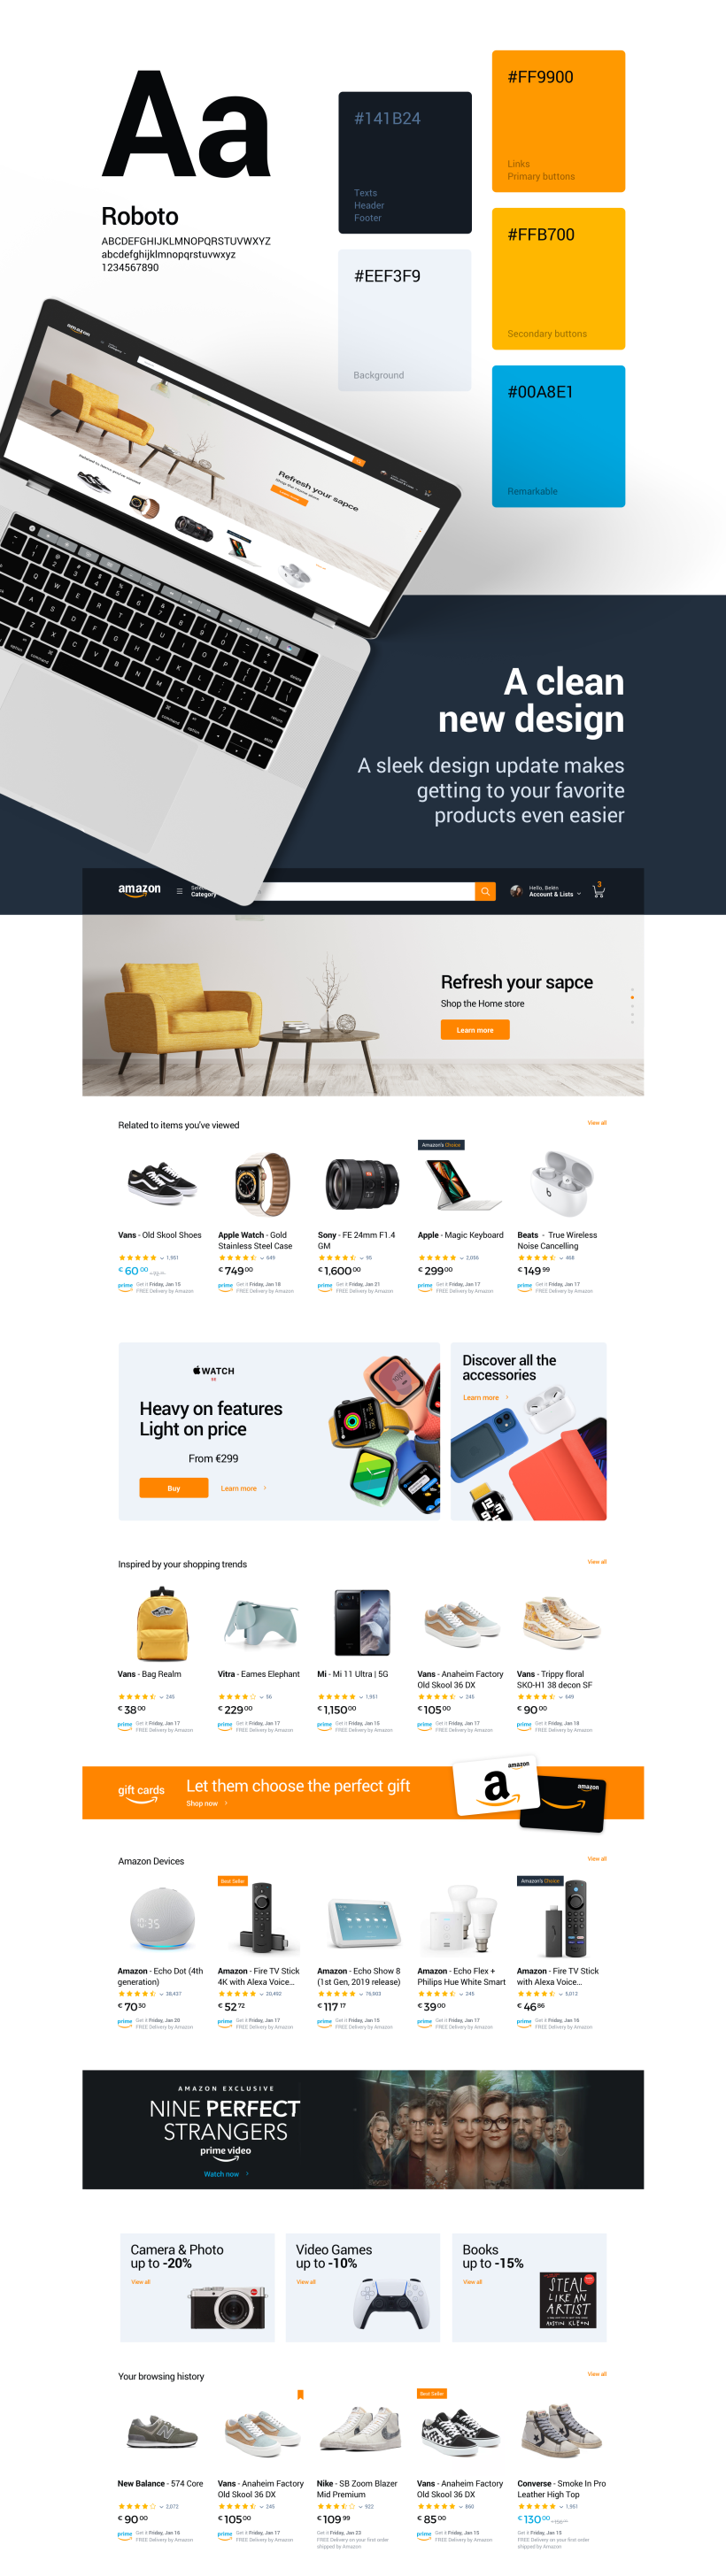 Amazon | Redesign 2